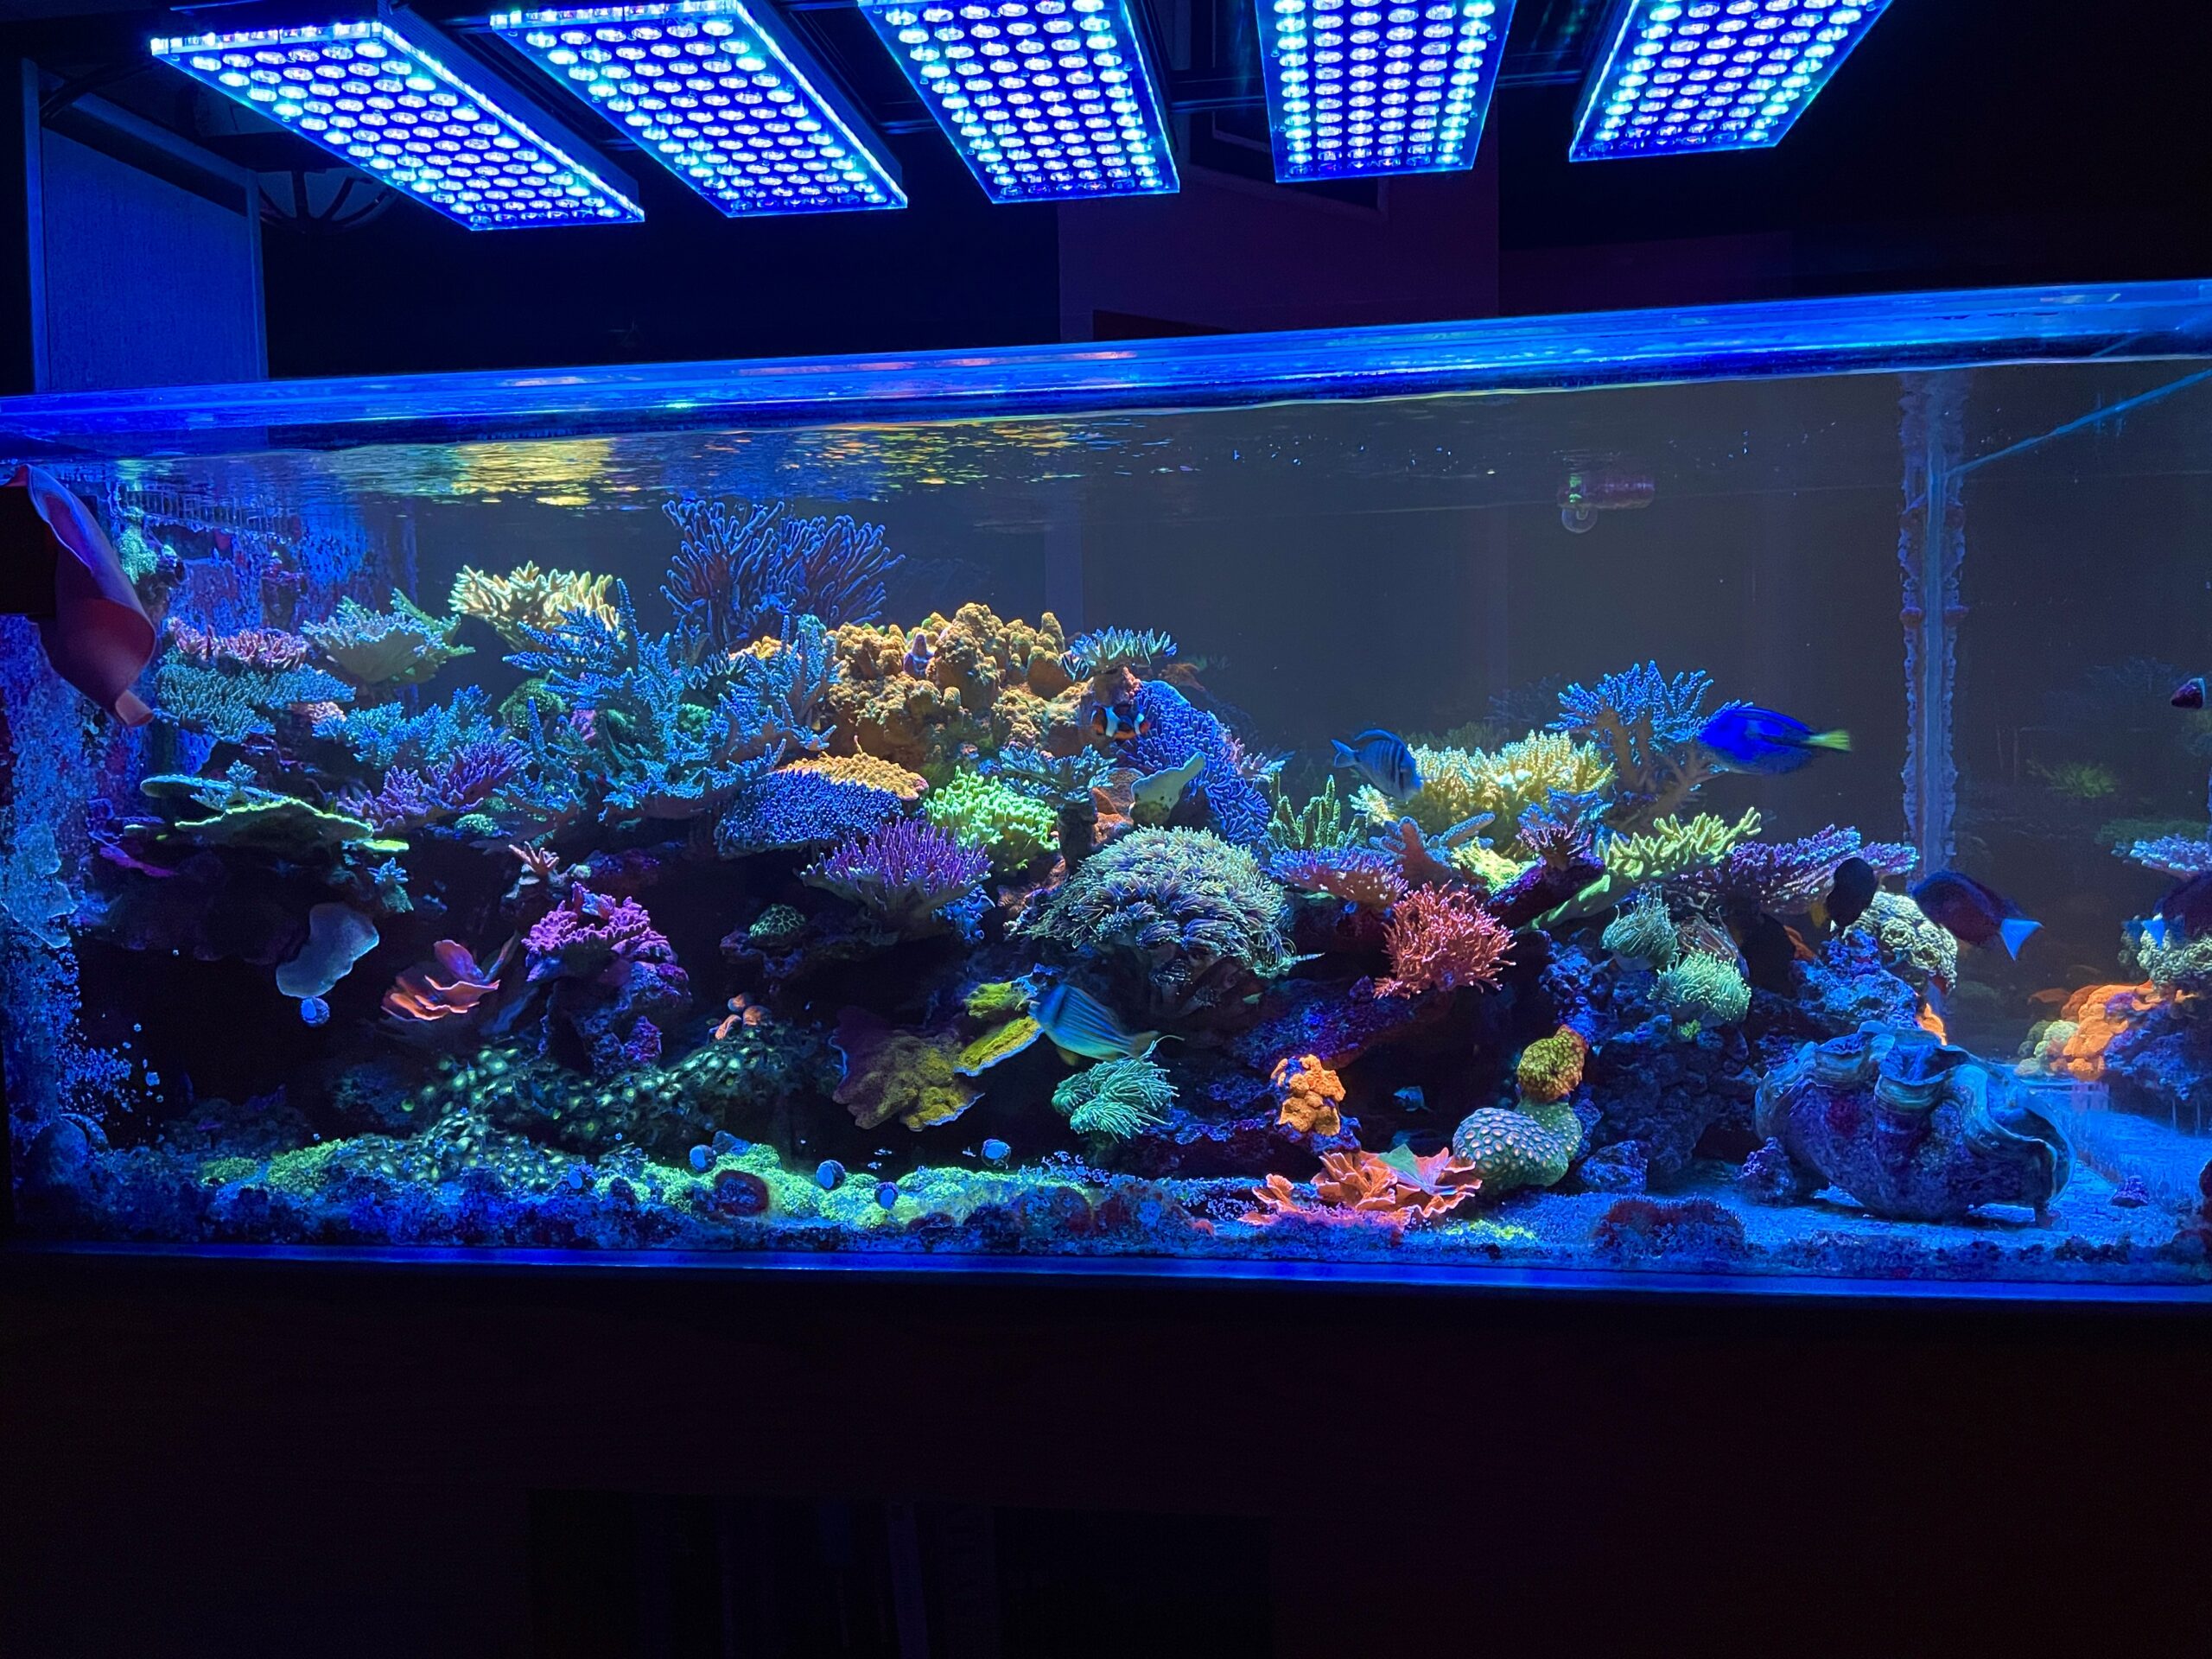 חמישה סמלים אטלנטיק נורית LED הטובה ביותר עבור הקרינה אלמוגים